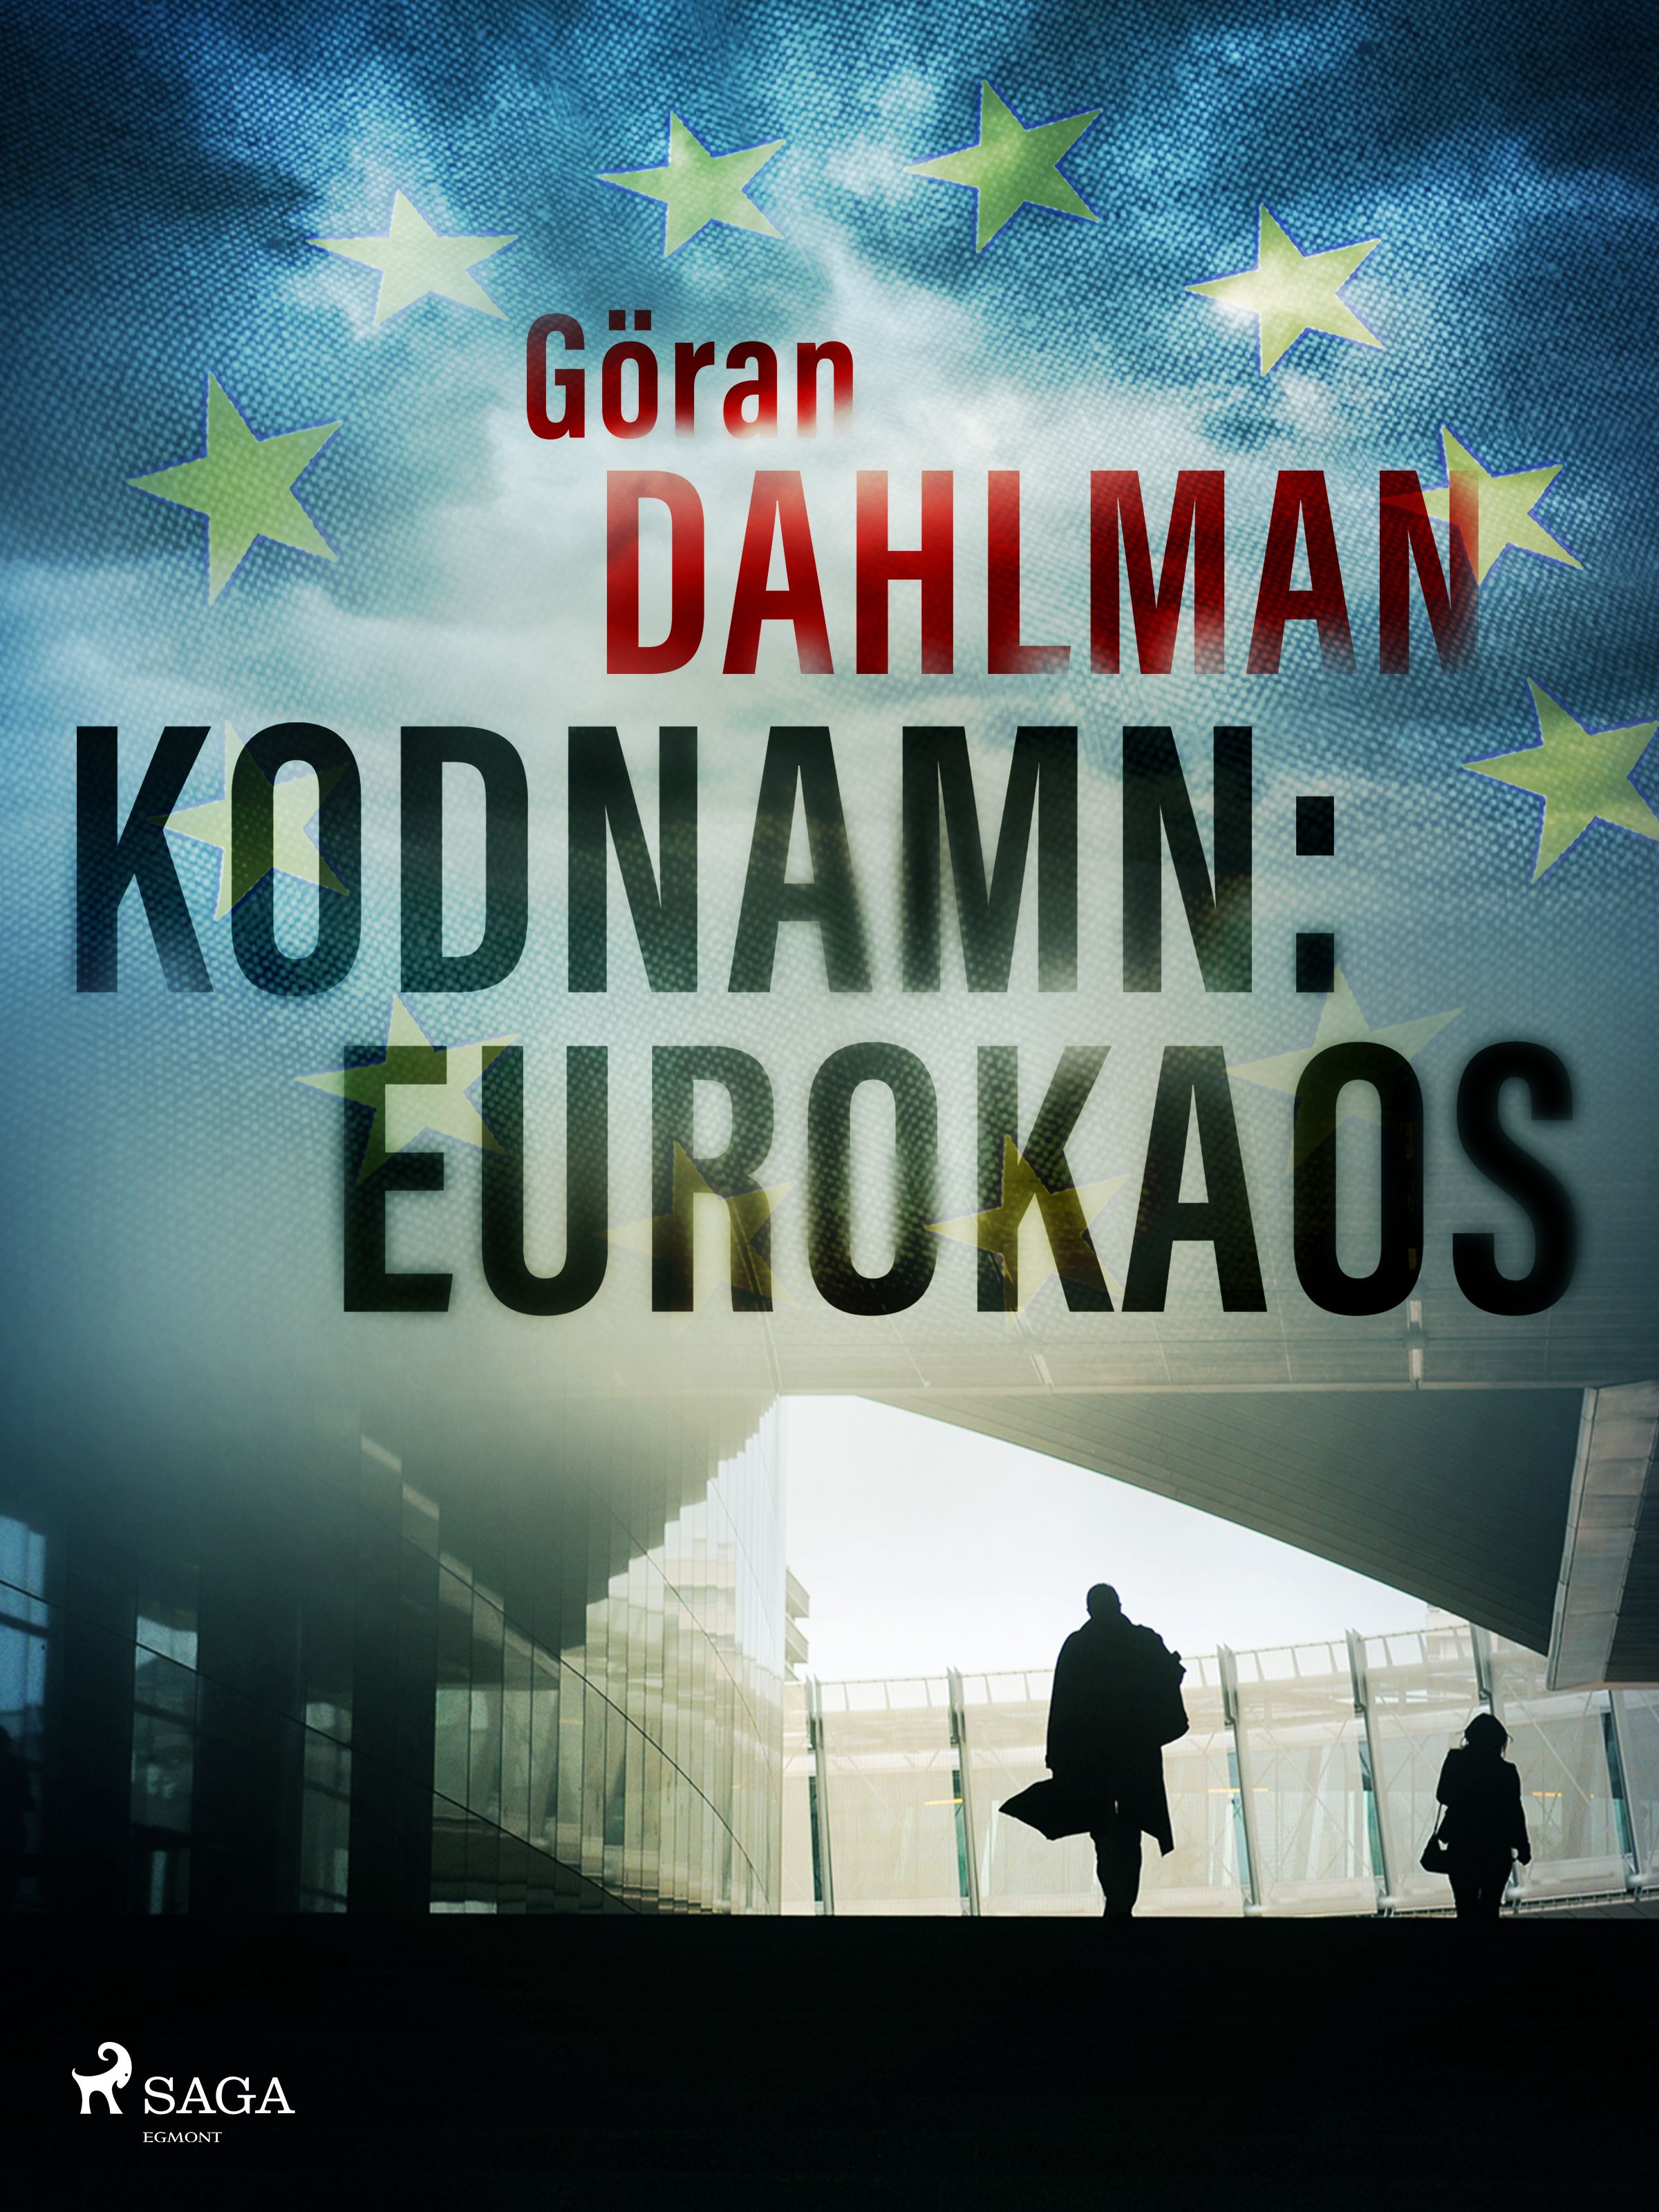 Kodnamn: Eurokaos, eBook by Göran Dahlman